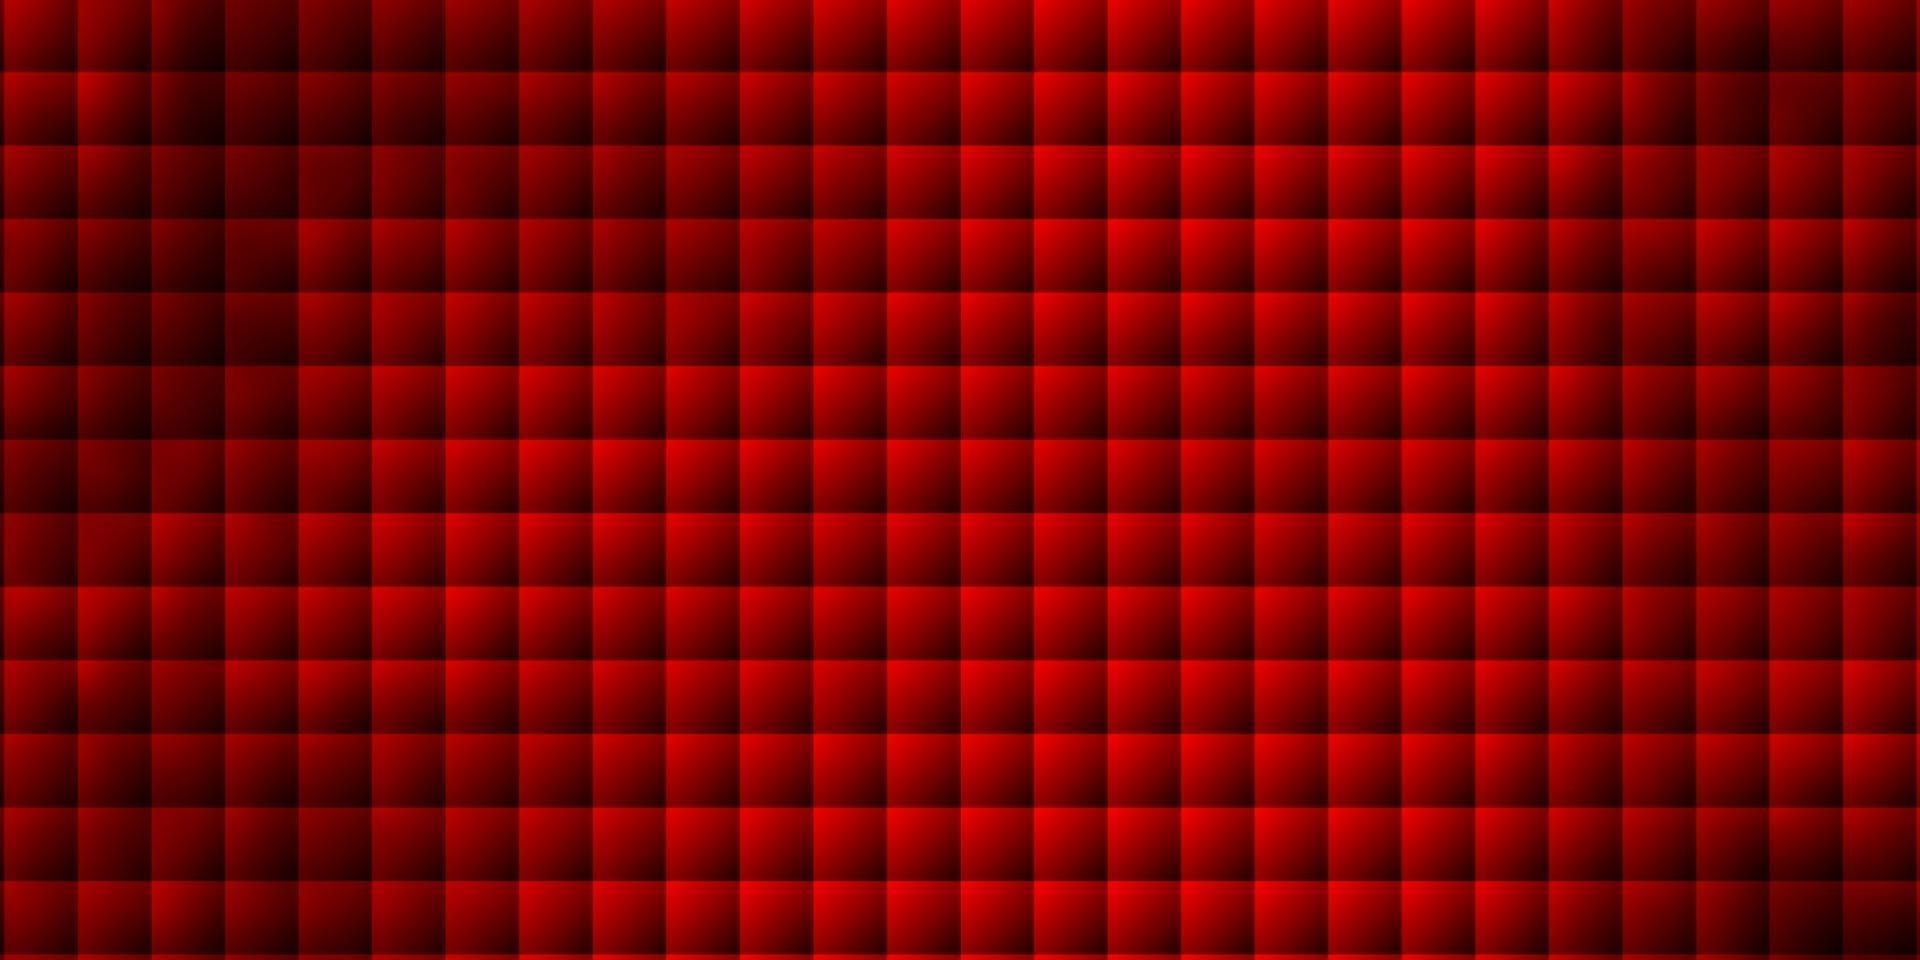 ljusröd vektorlayout med linjer, rektanglar. vektor